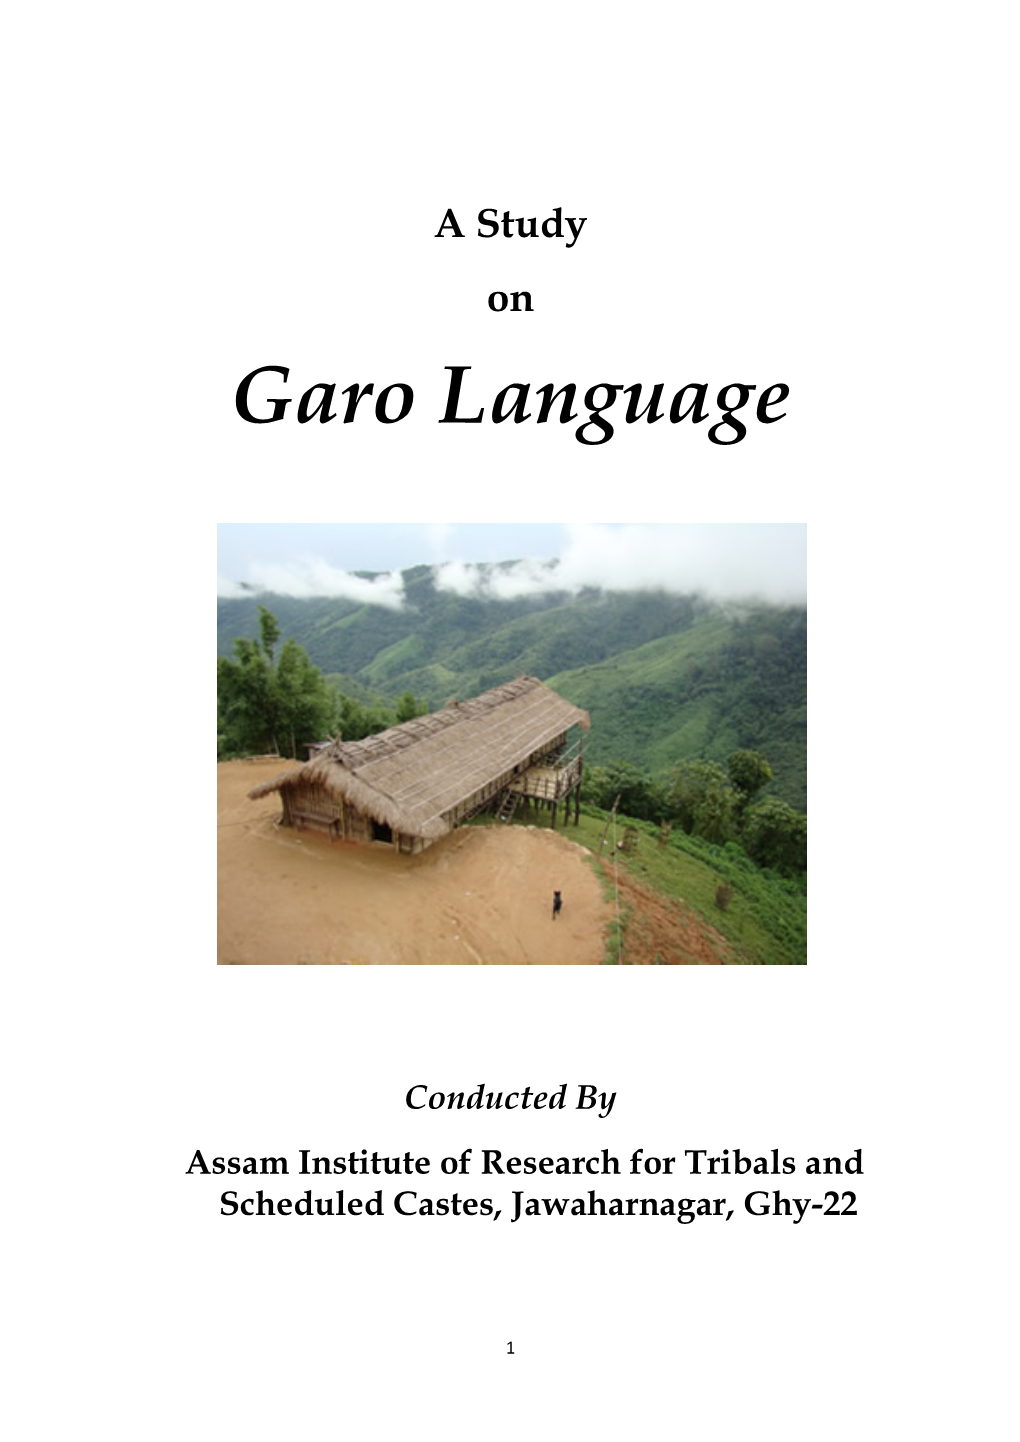 Garo Language